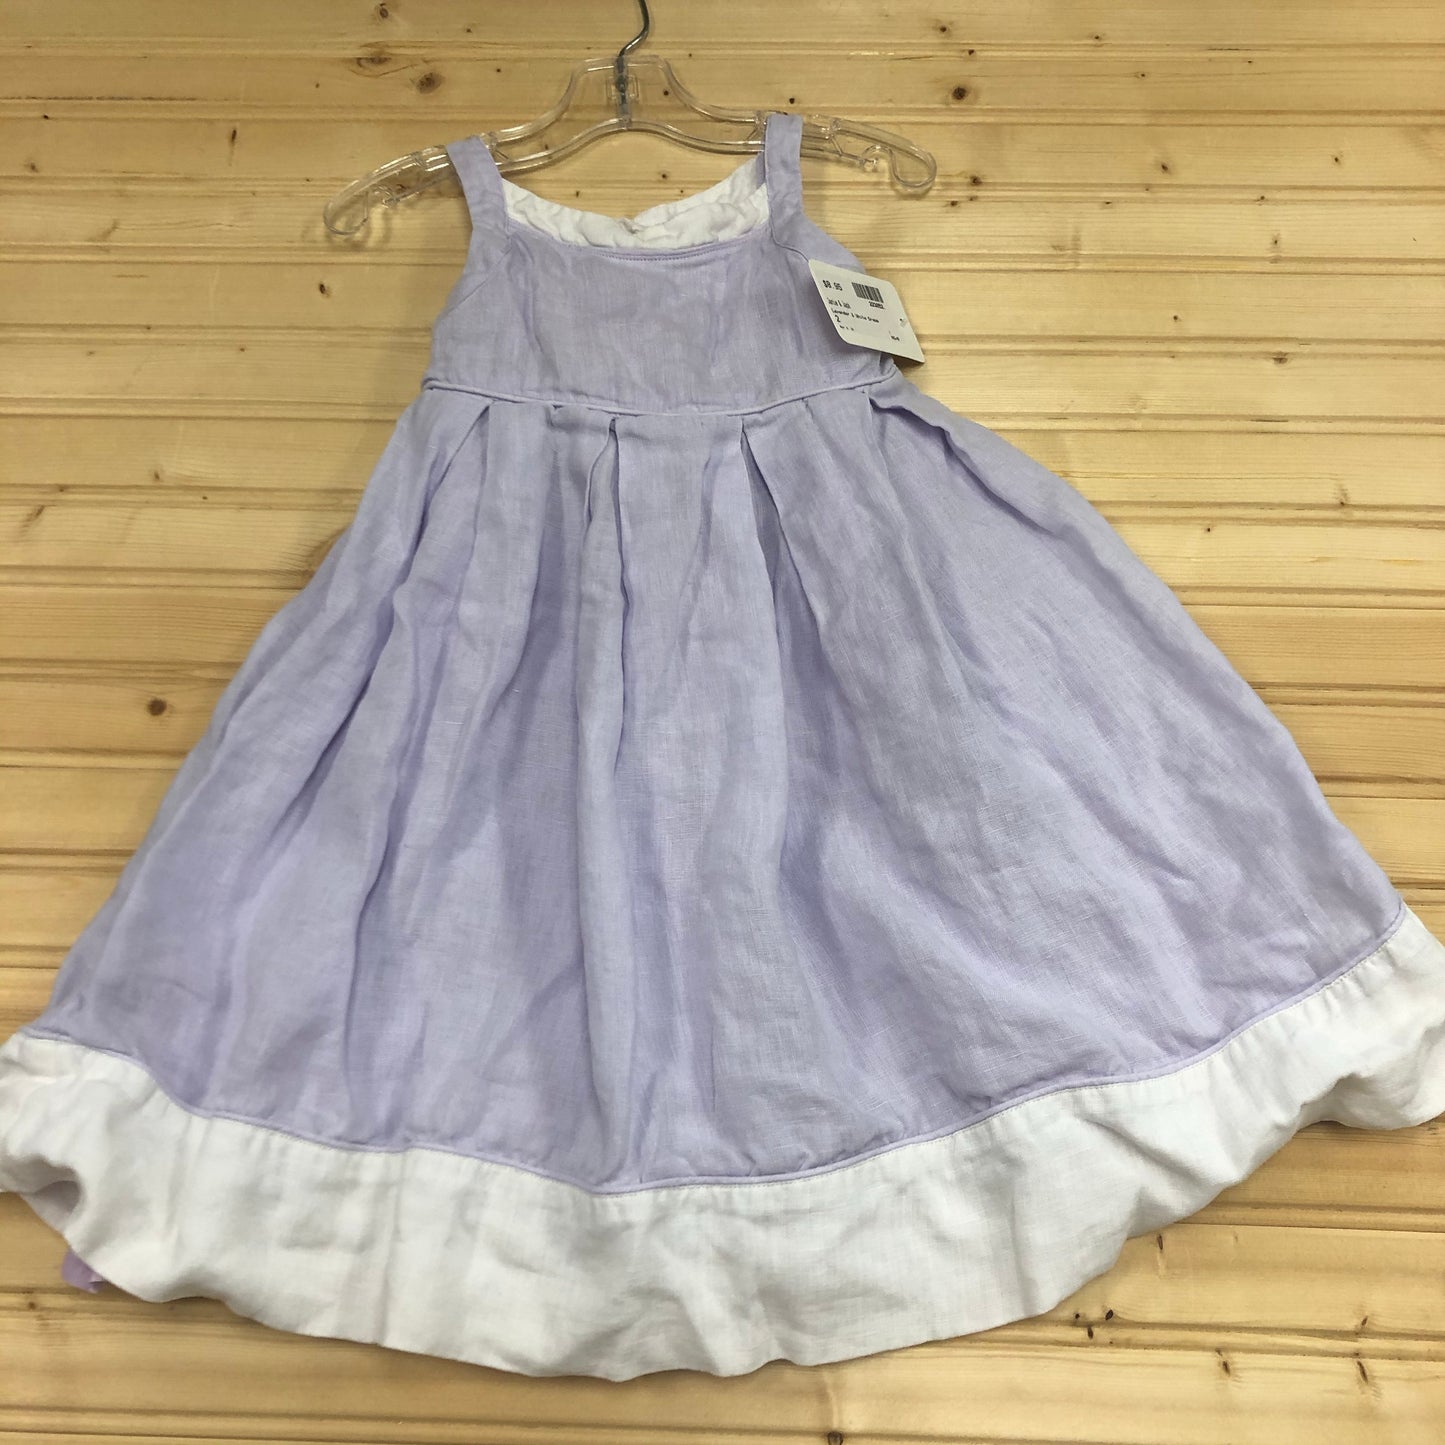 Lavender & White Dress